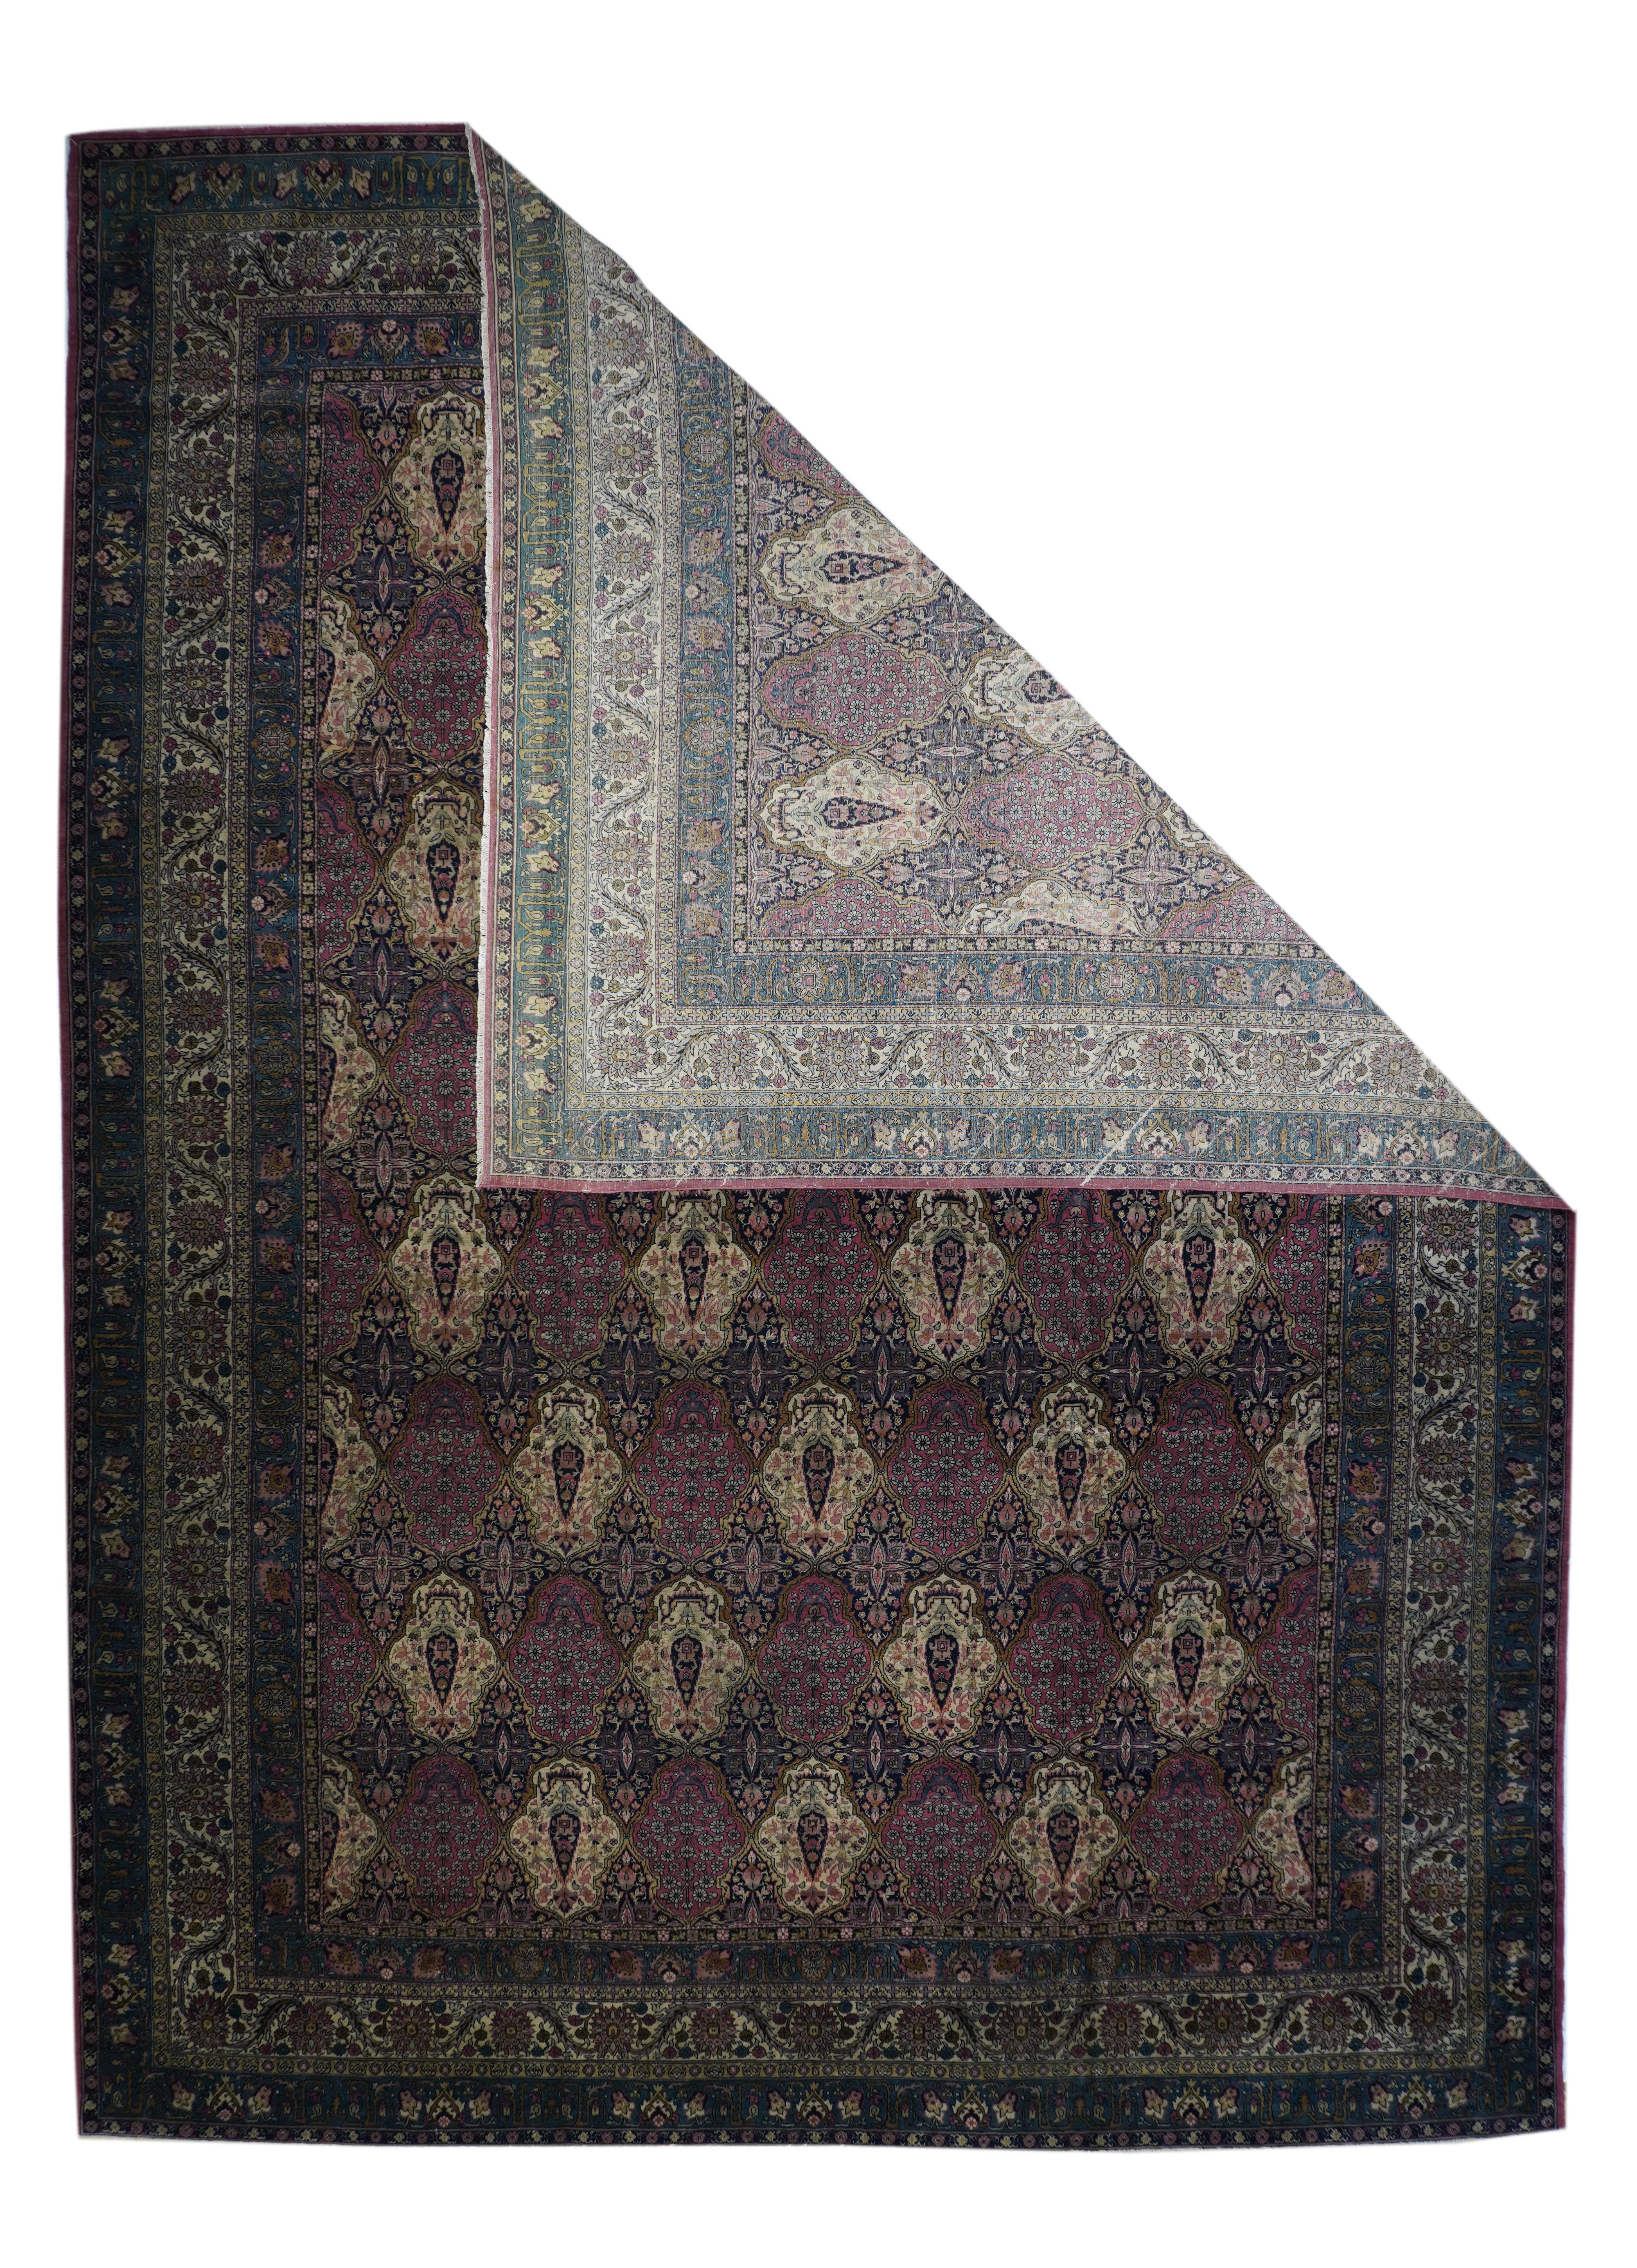 Antique Sivas rug measures 11'7'' x 16'0''.